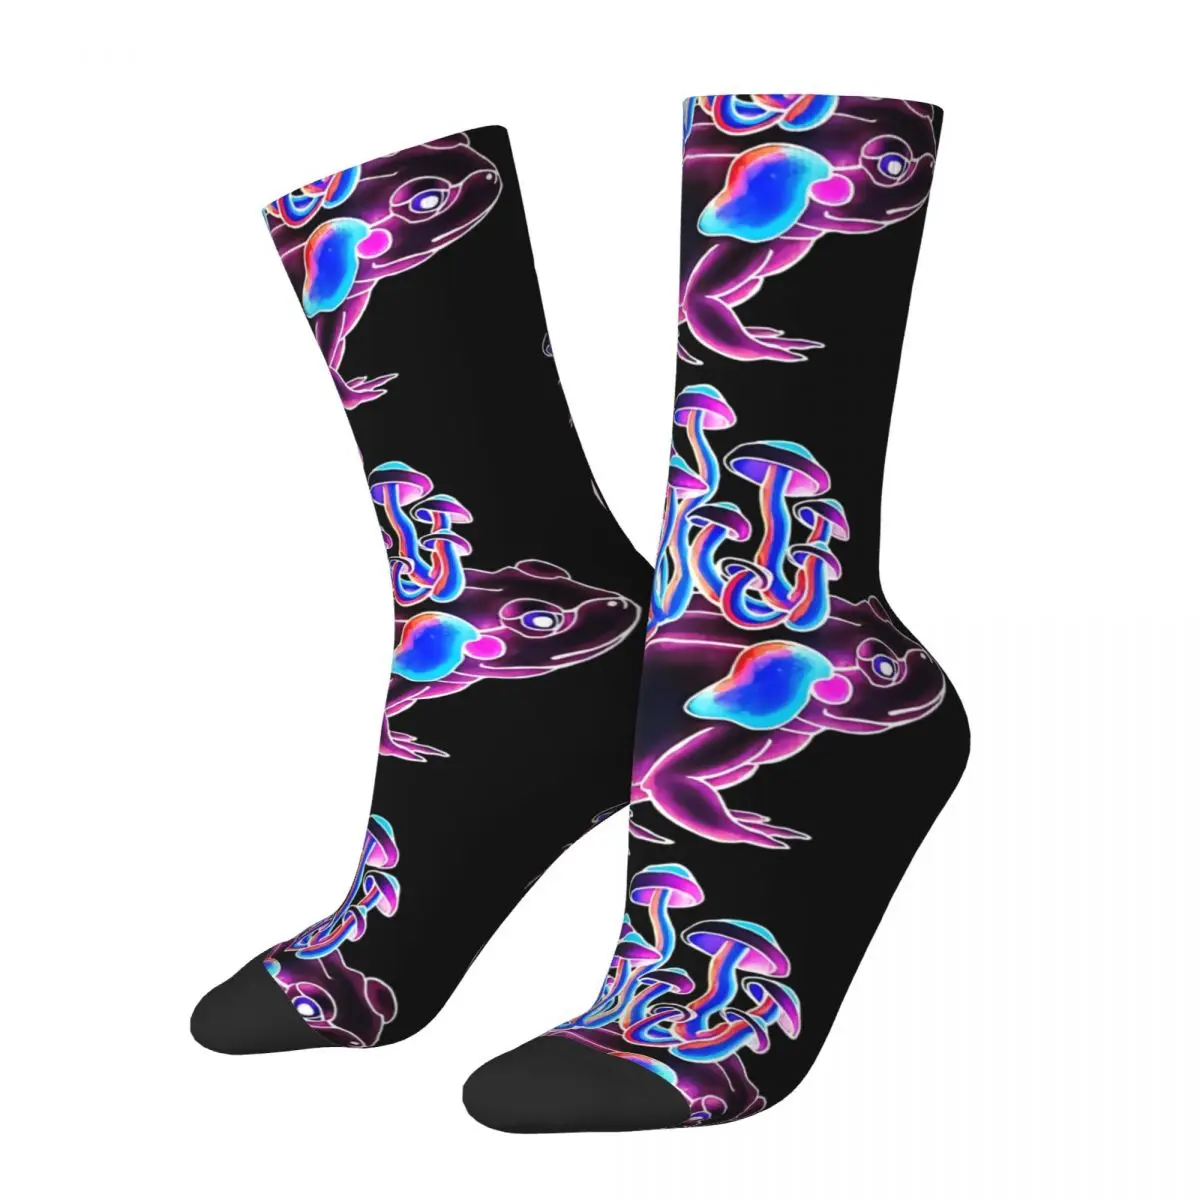 

Носки мужские неоновые психоделические, винтажные бесшовные с принтом лягушек, грибов, жабы, животных, в уличном стиле, сумасшедшие носки с принтом в подарок